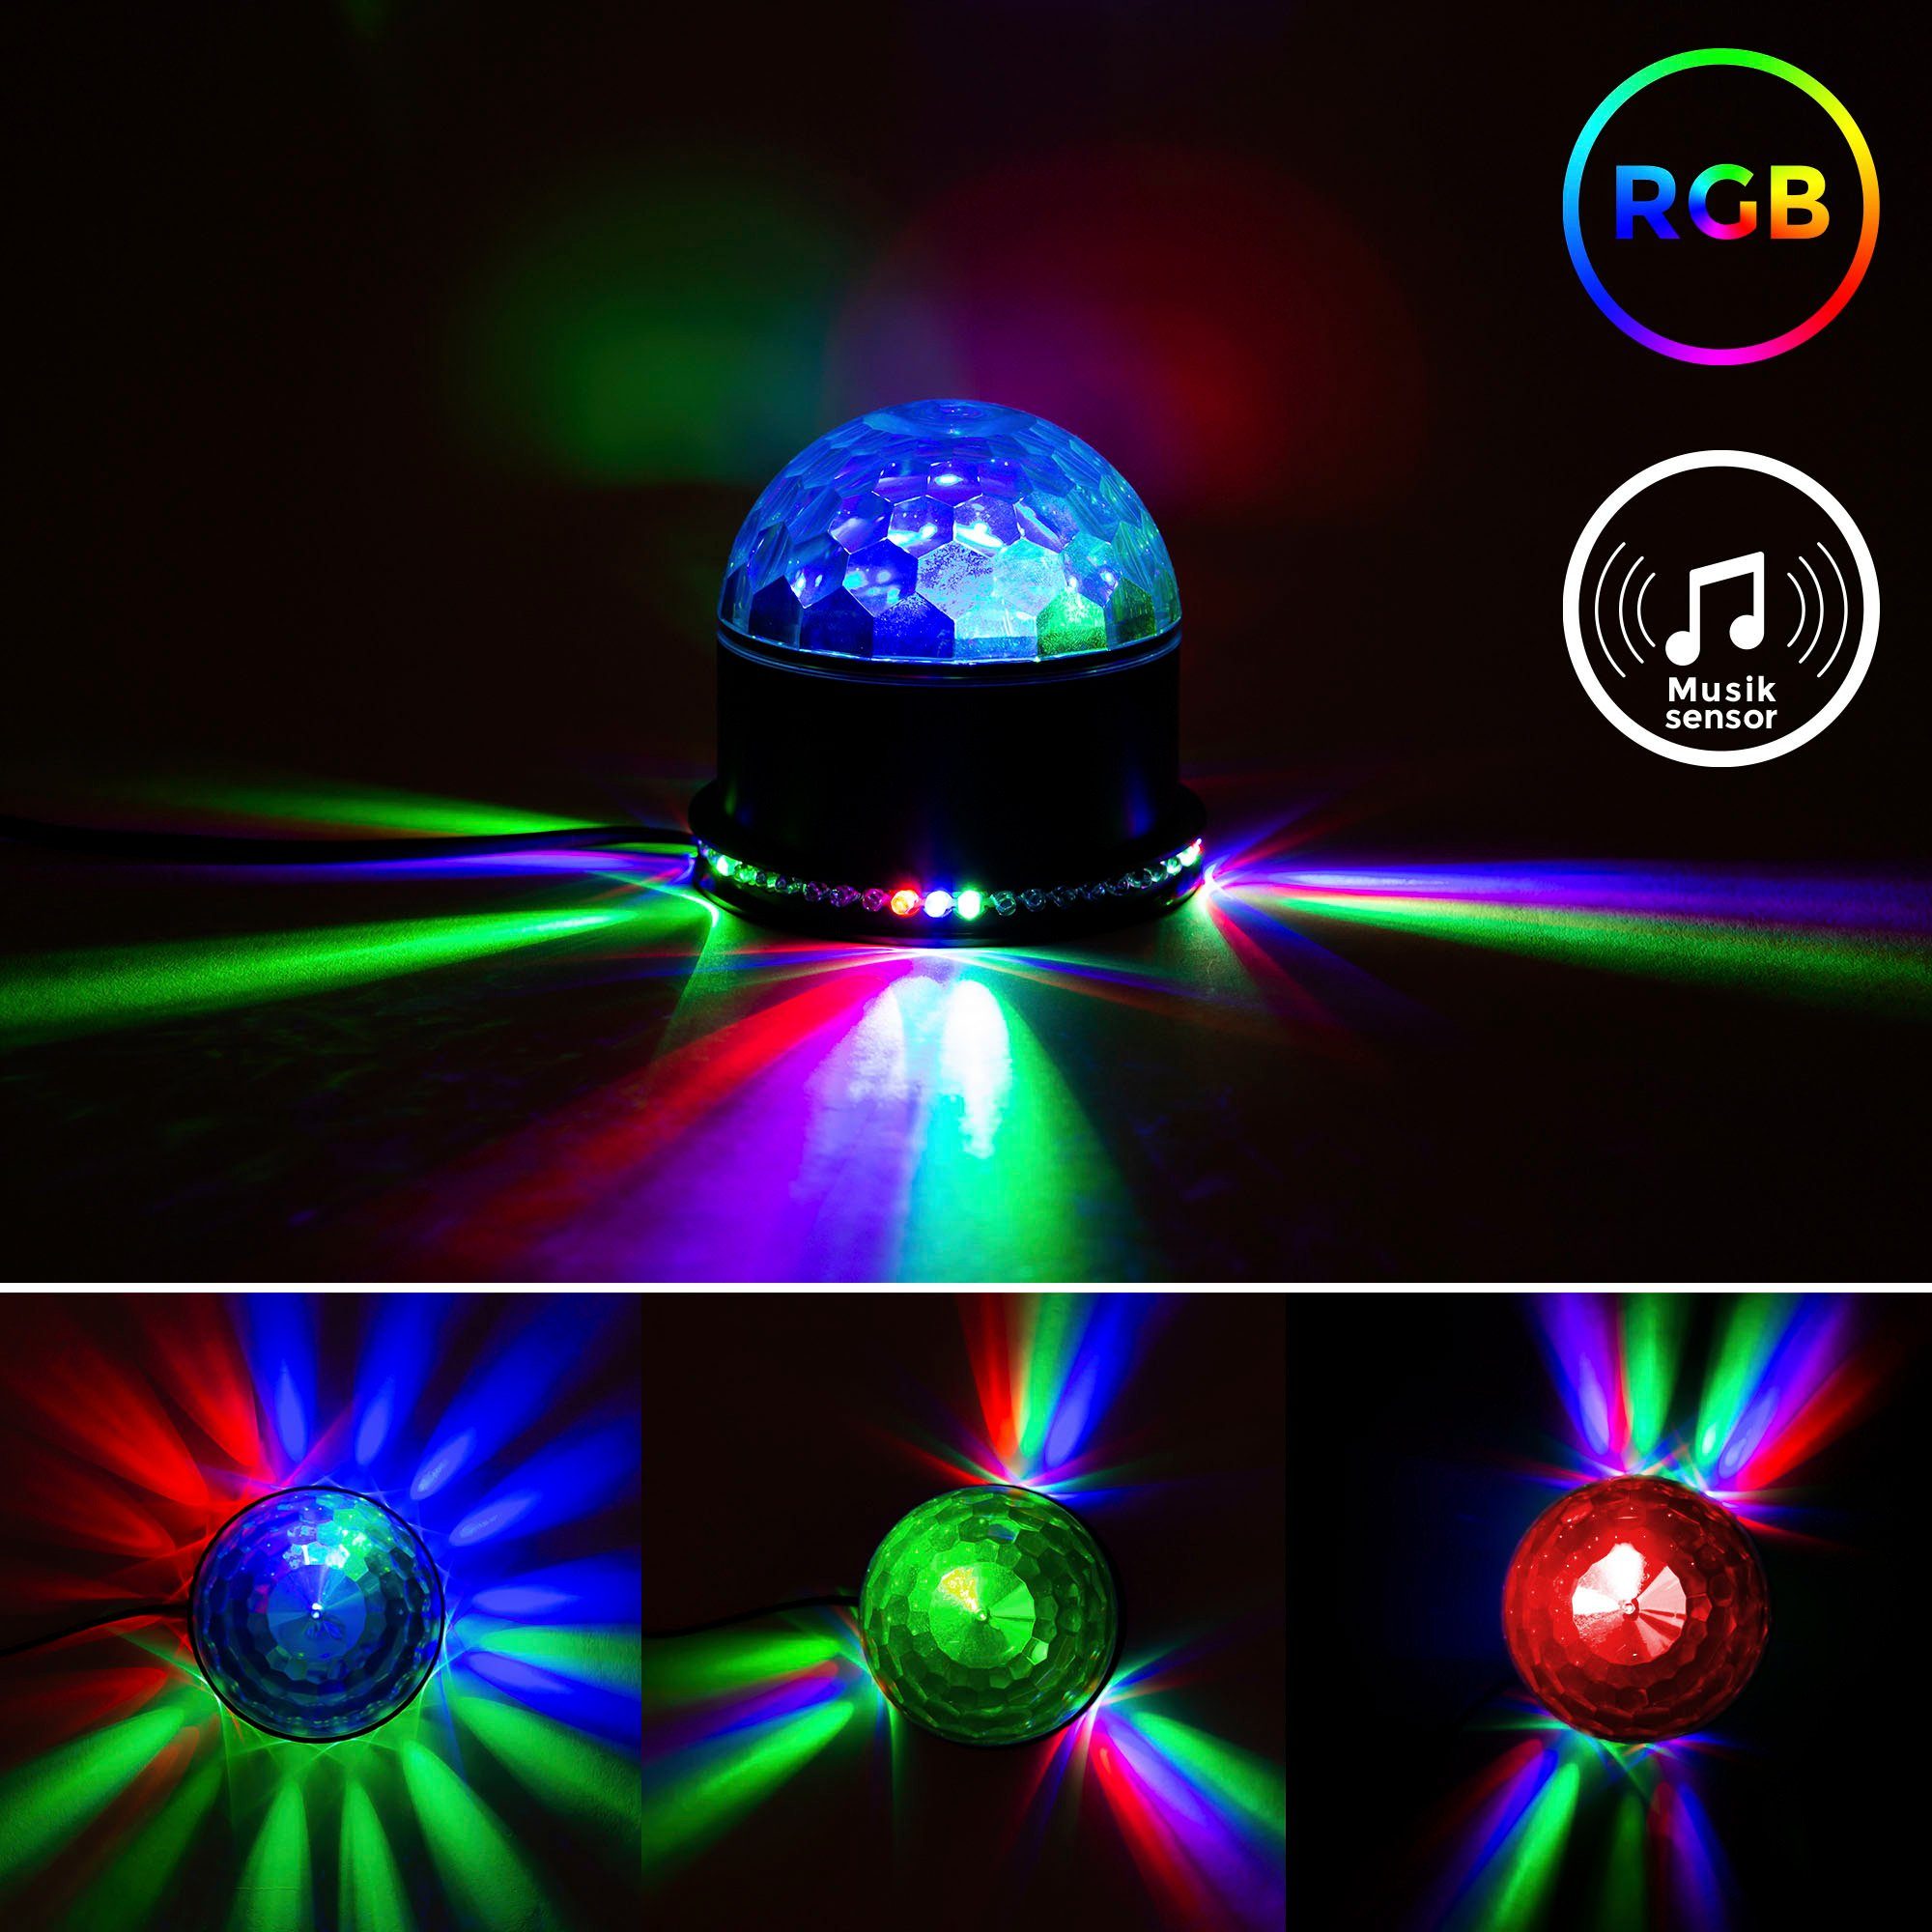 Discolicht, LED Tischlampe RGB, Musiksensor, fest RGB RGB, Partyleuchte, BK_GD1327 integriert, Motivstrahler Partylicht, mit LED B.K.Licht LED Farbwechsel,